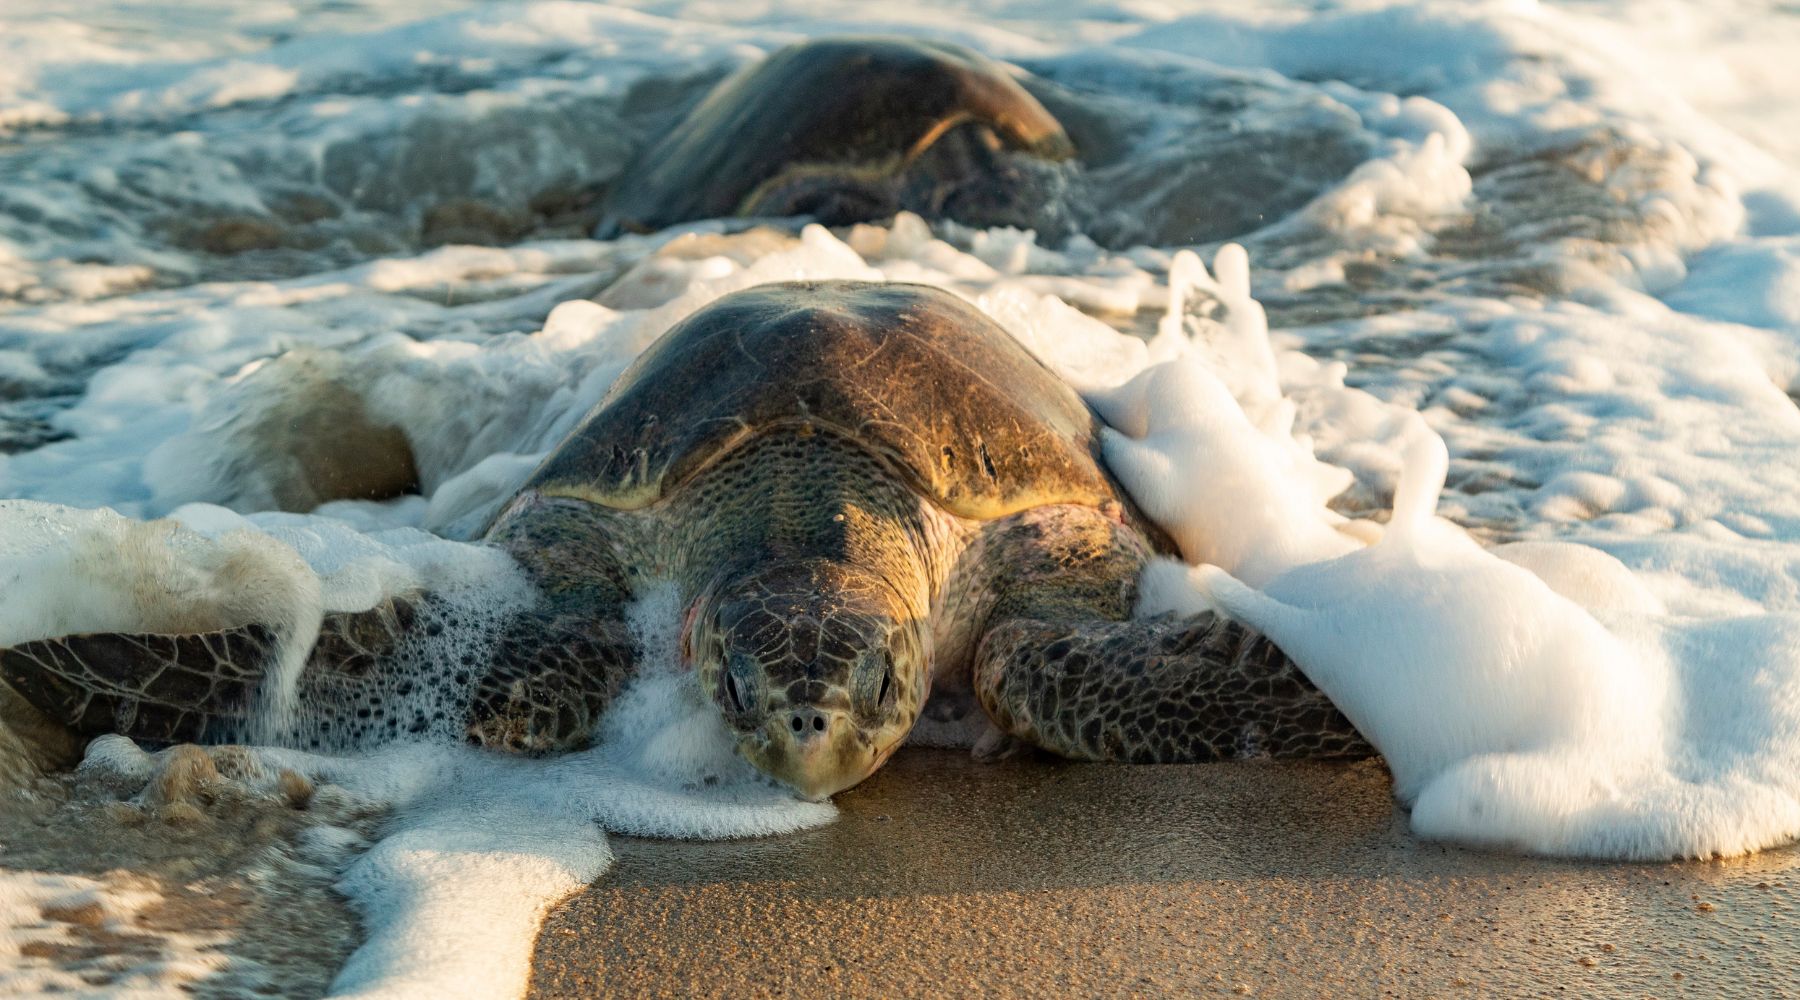 Helping Endangered Sea Turtles